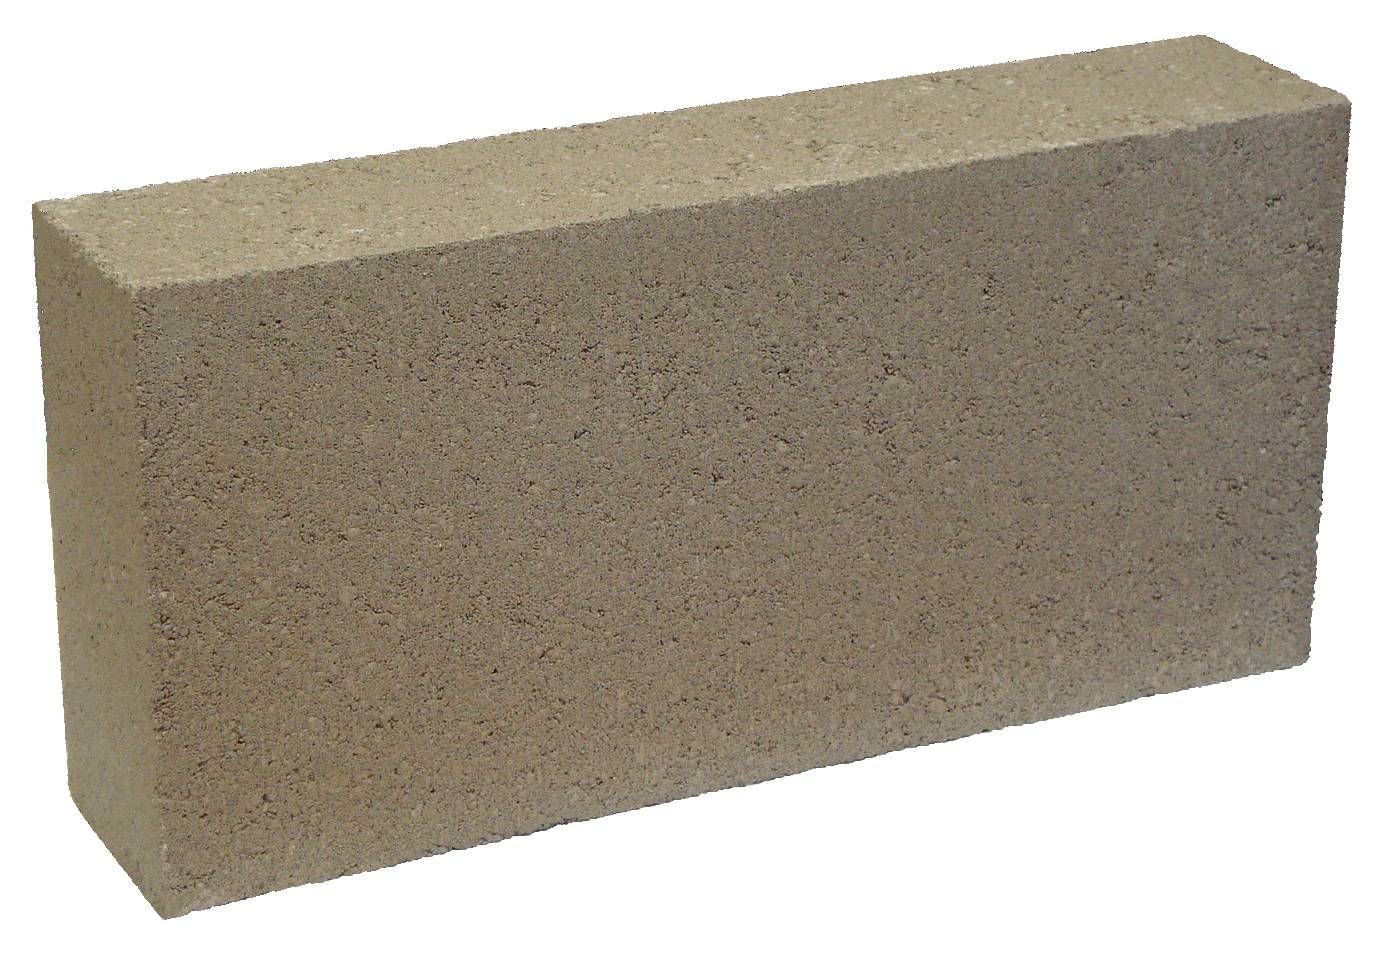 Dense Paint-Grade Concrete Block